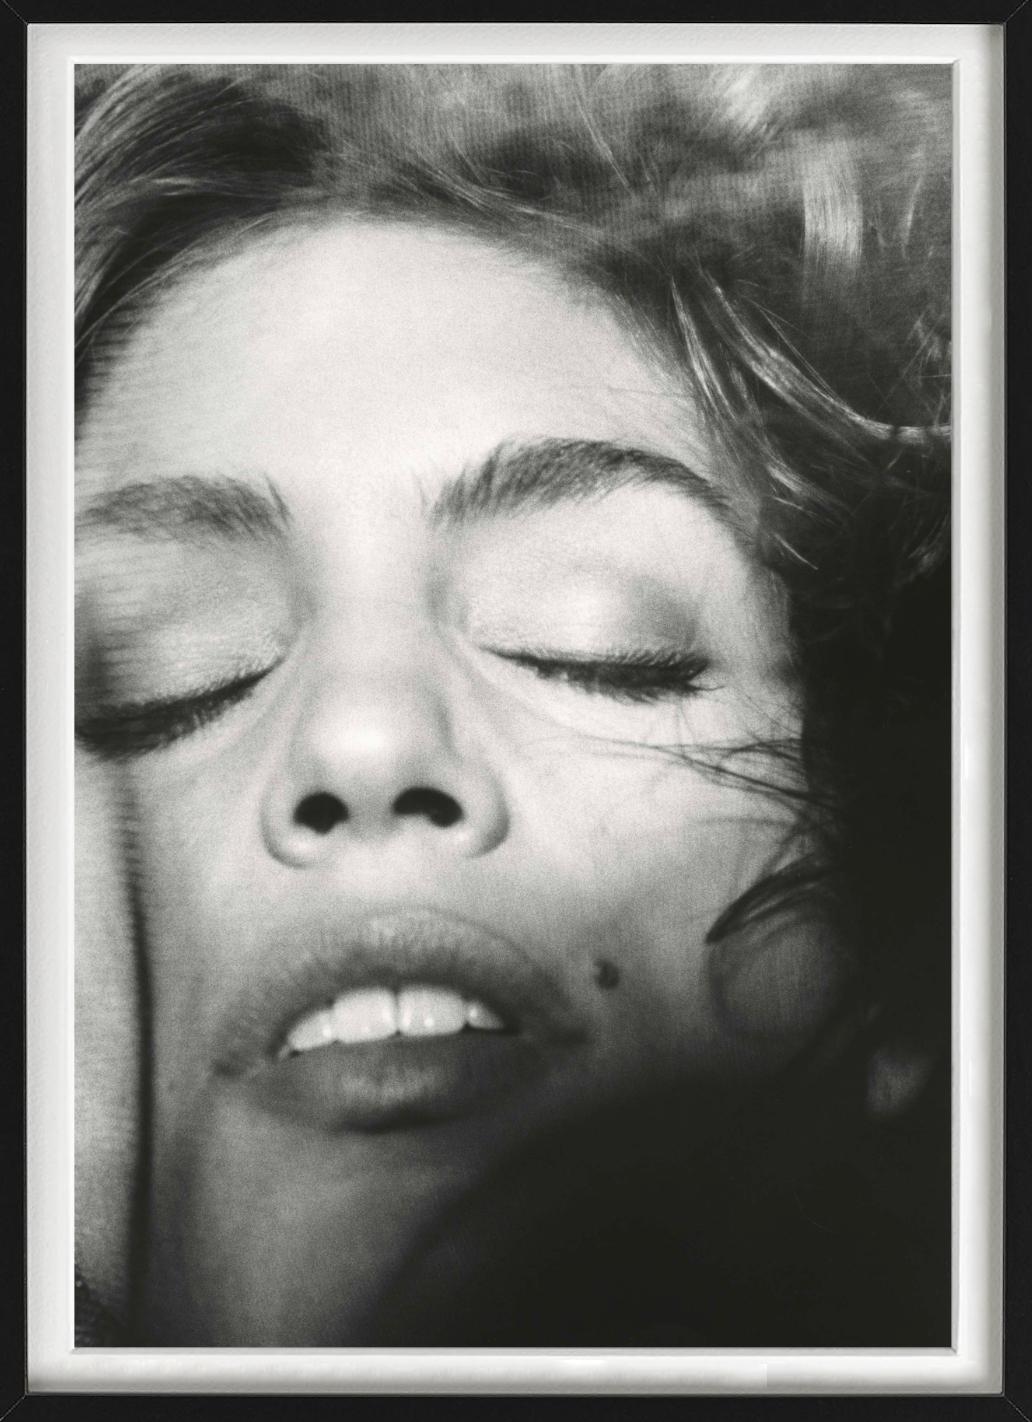 Cindy Crawford Veil, NYC – Nahaufnahme, Kunstfotografie 1990 – Photograph von Sante D´ Orazio